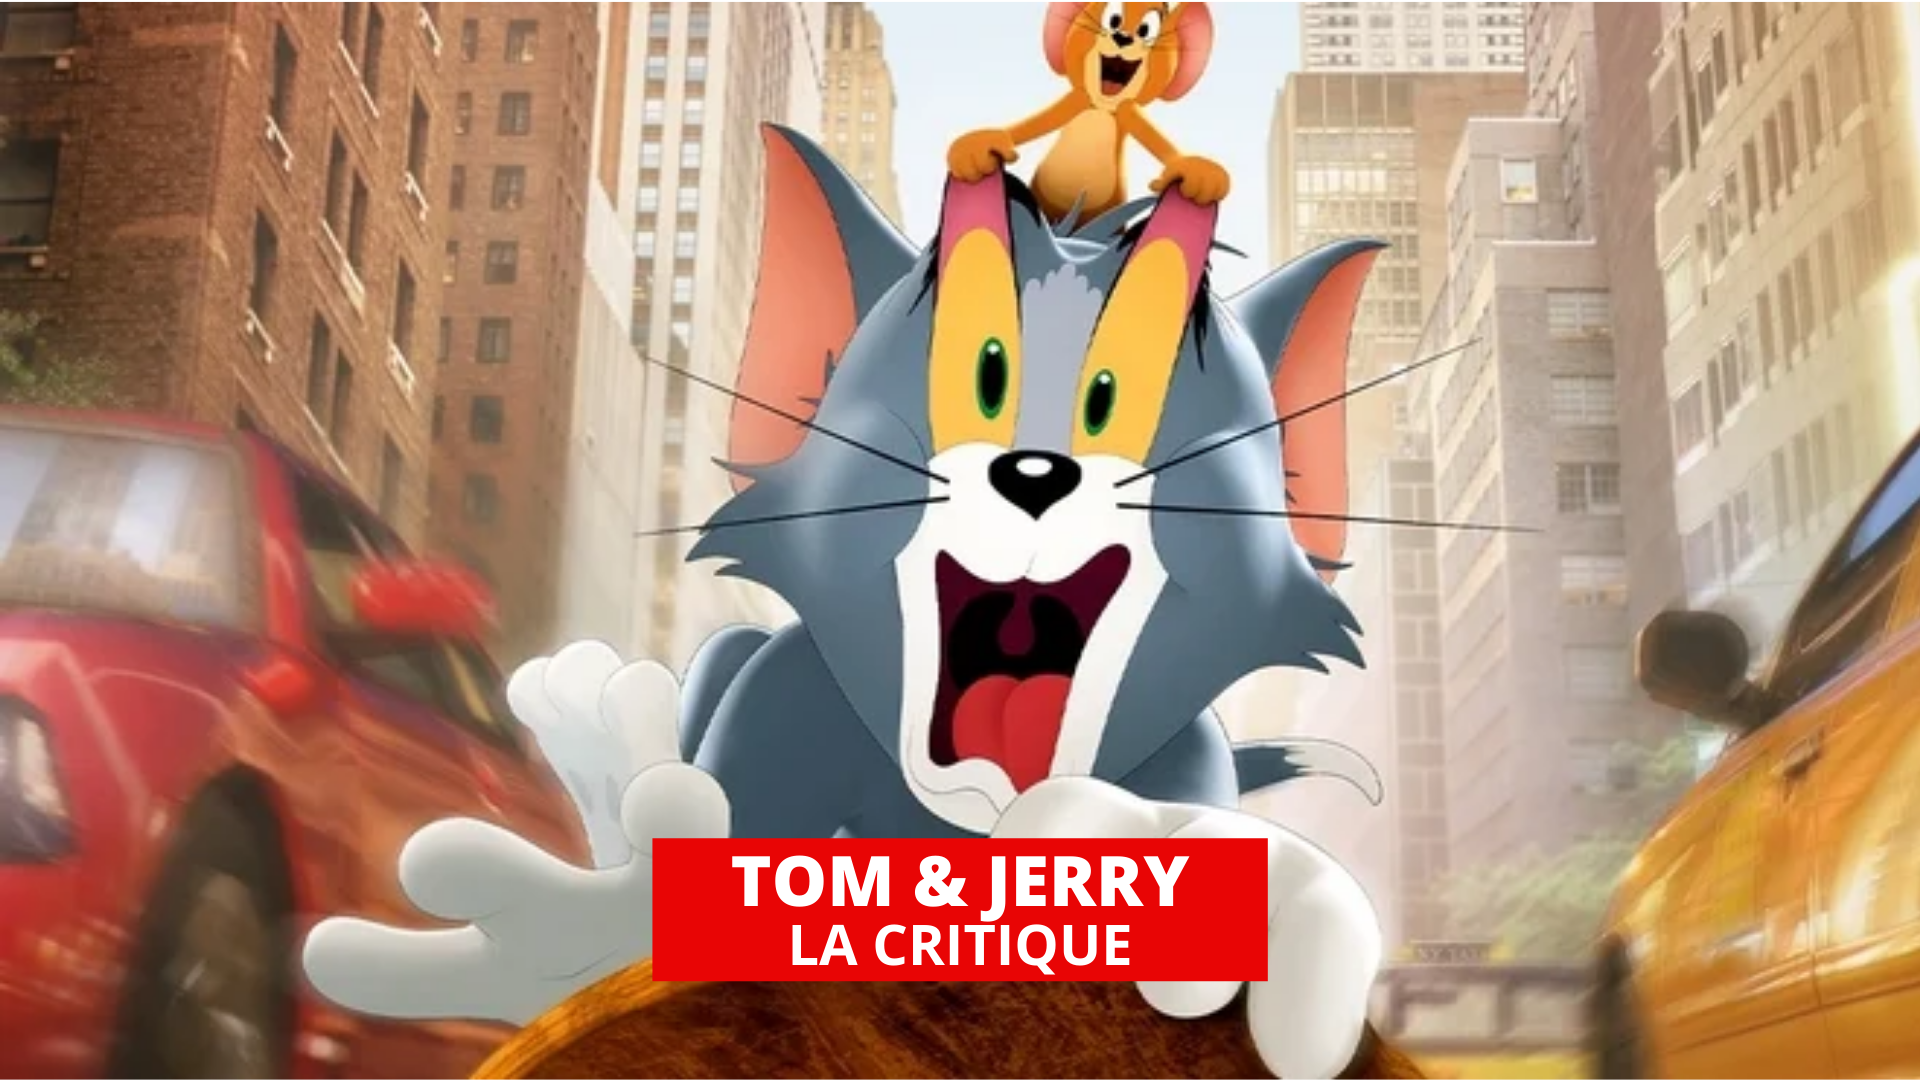 Tom & Jerry : le duo s'incruste dans le monde réel